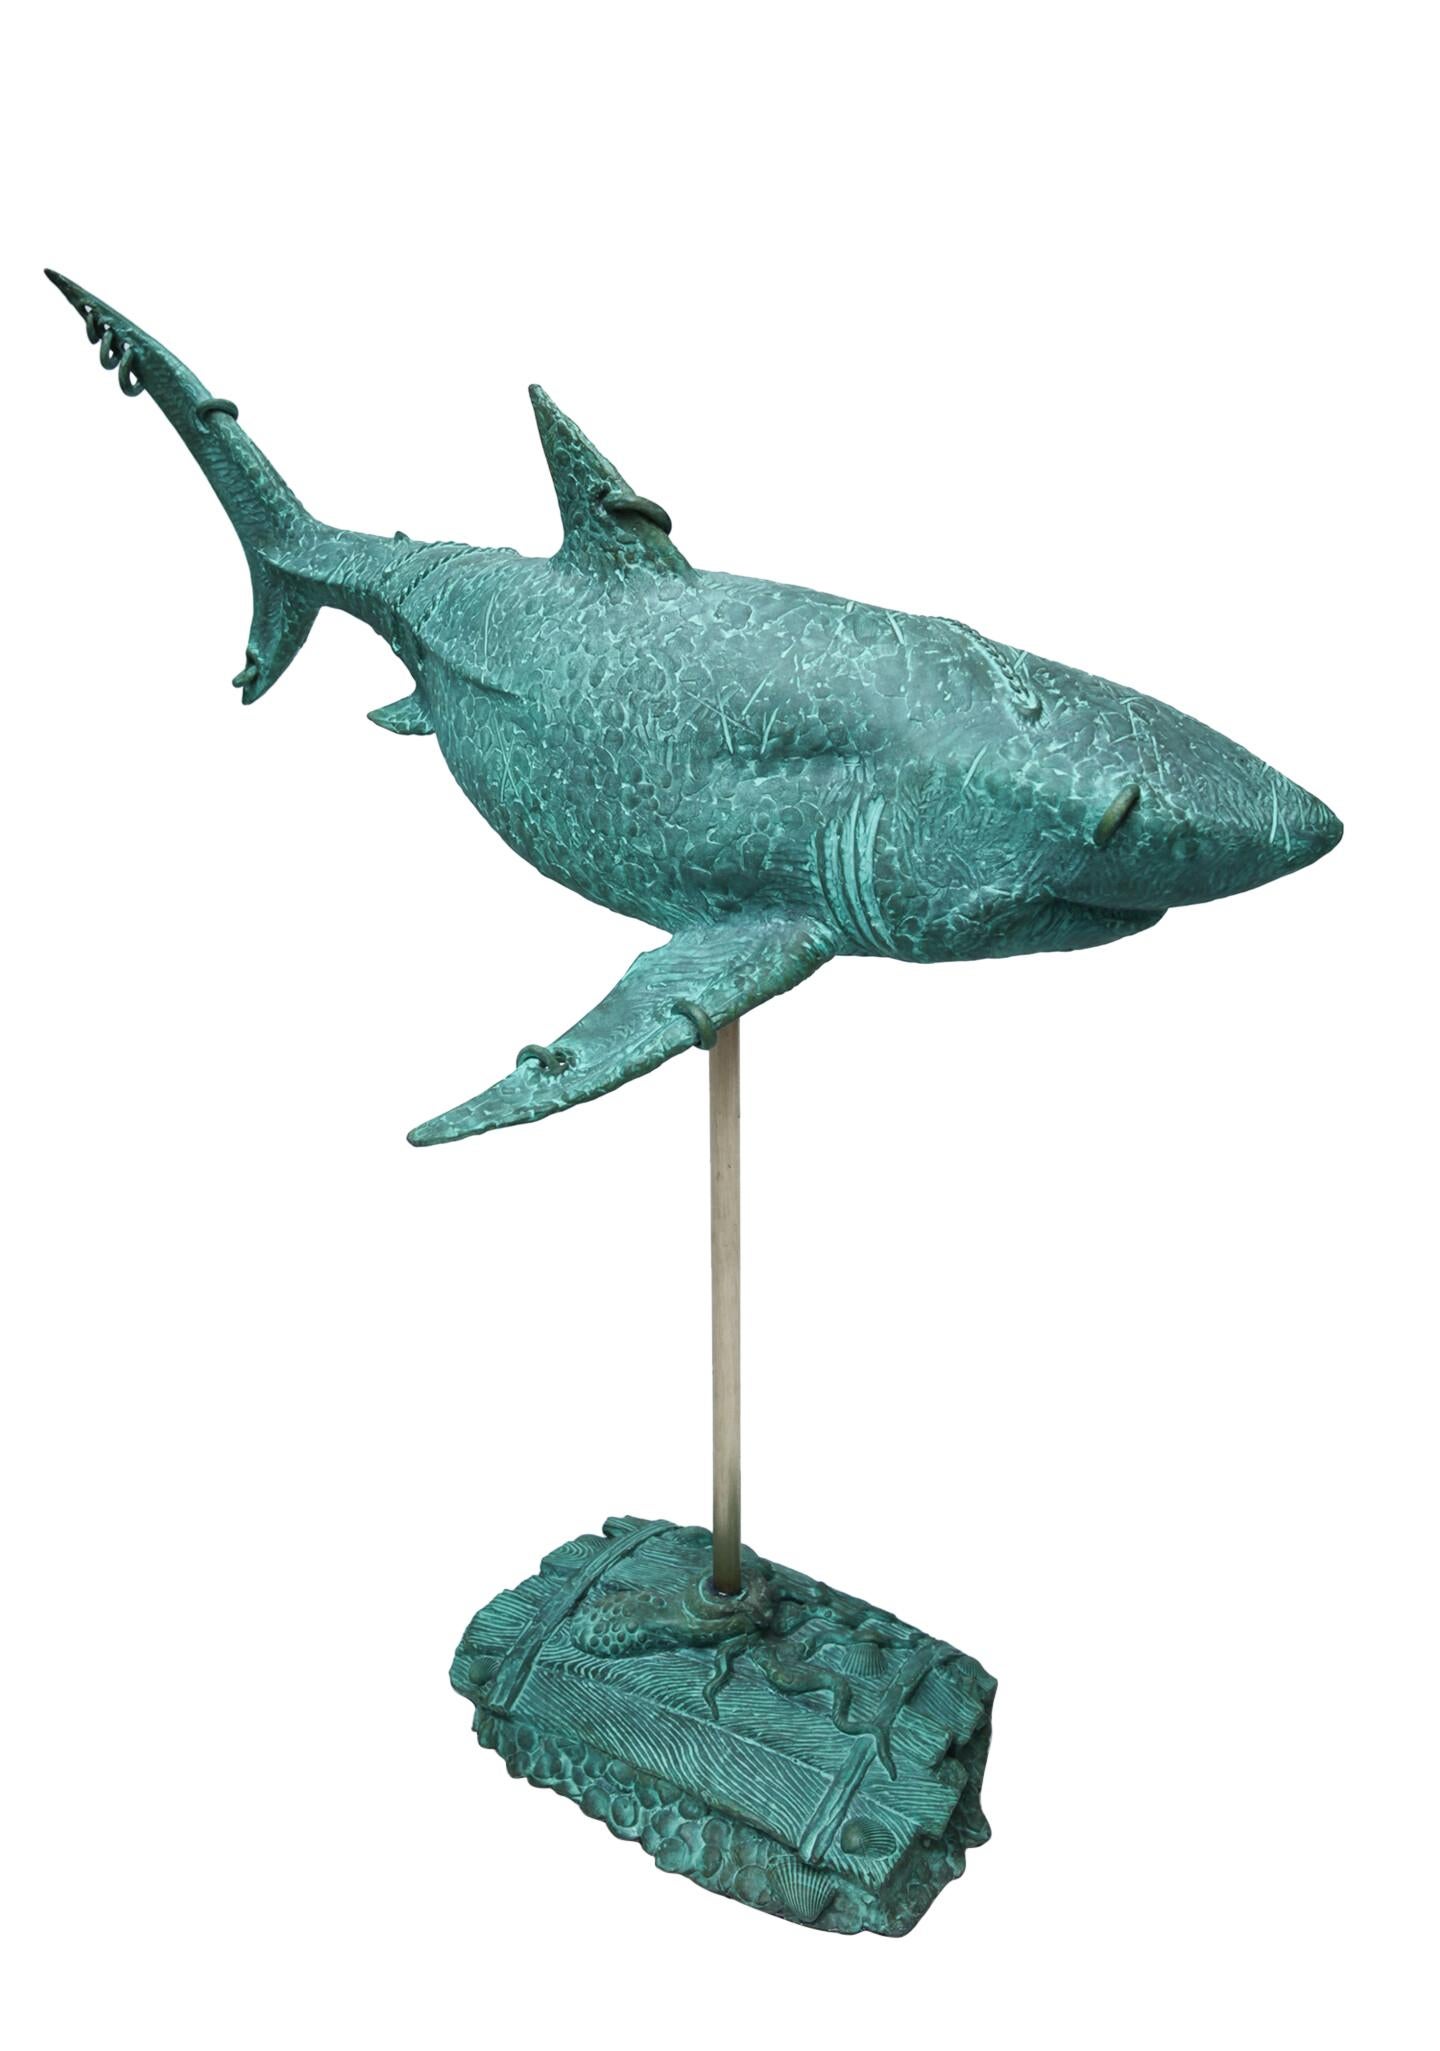 Volodymyr MYKYTENKO Figurative Sculpture - Shark, Bronze Sculpture by Volodymyr Mykytenko, 2014